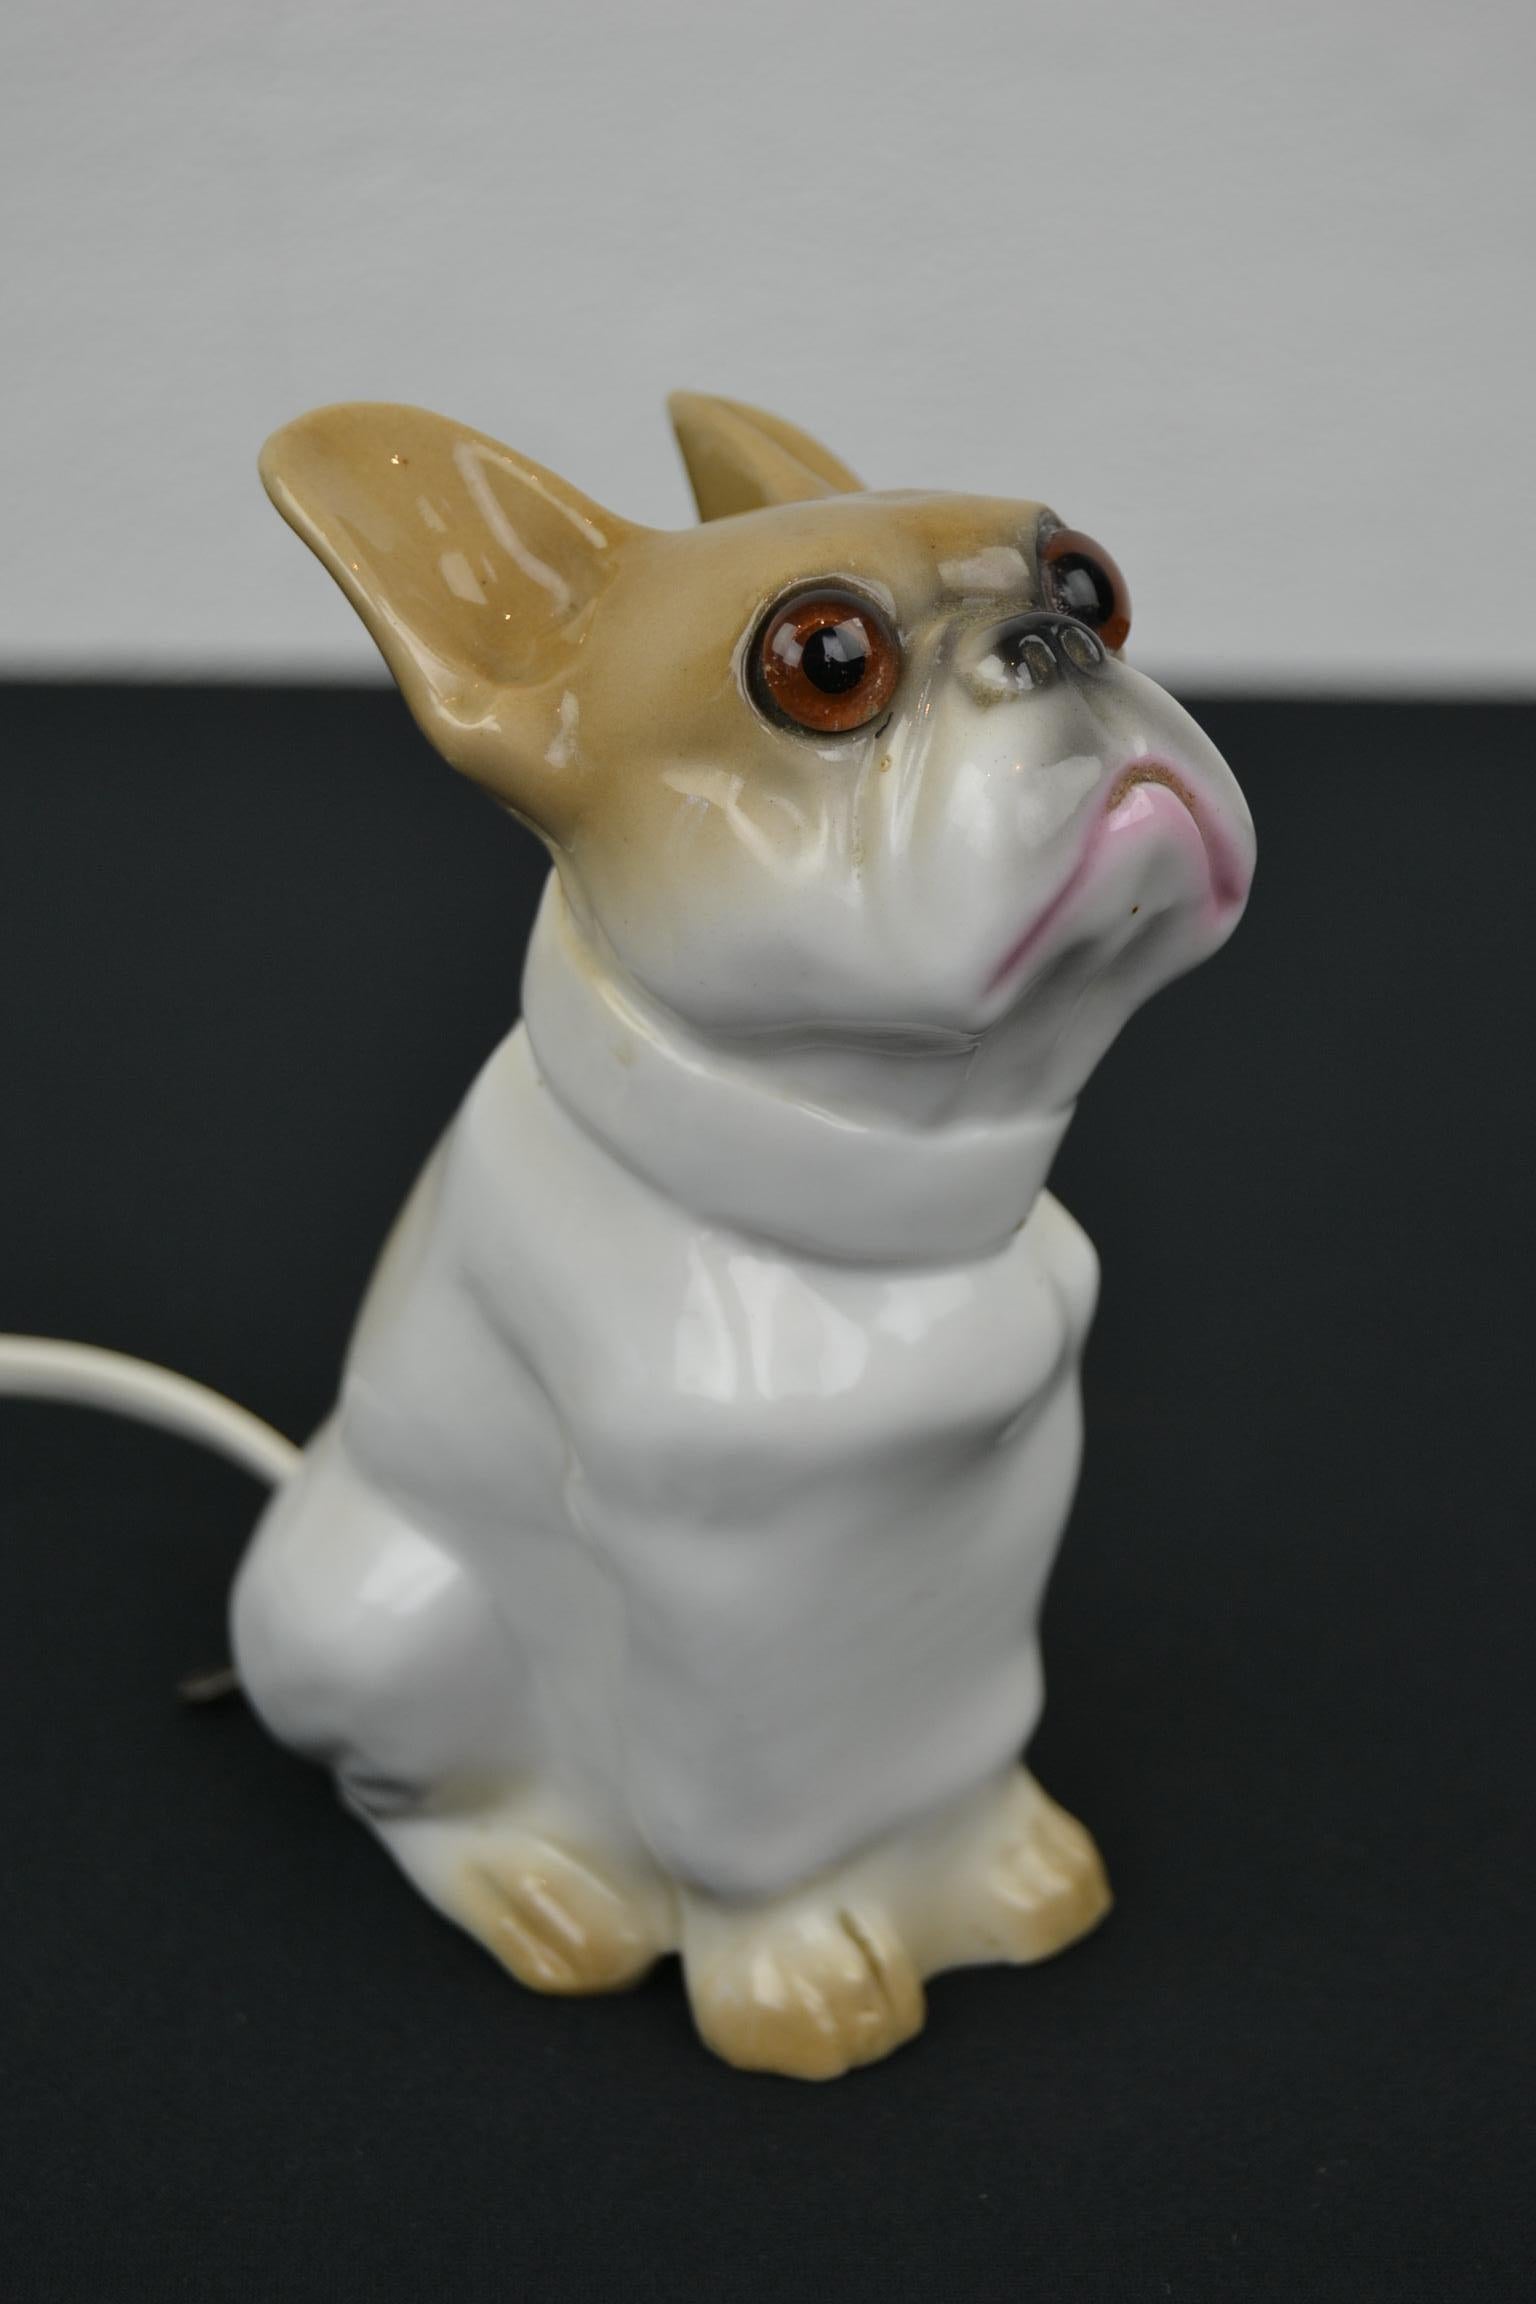 Französische Bulldogge Parfüm leicht. 
Eine Porzellanskulptur einer Bulldogge in den Farben weiß und hellbraun / karamellbraun. Dieser Luftreiniger - Parfümleuchte hat einen Porzellanstempel im Inneren. 

Diese antike Bulldoggen-Skulptur ist in